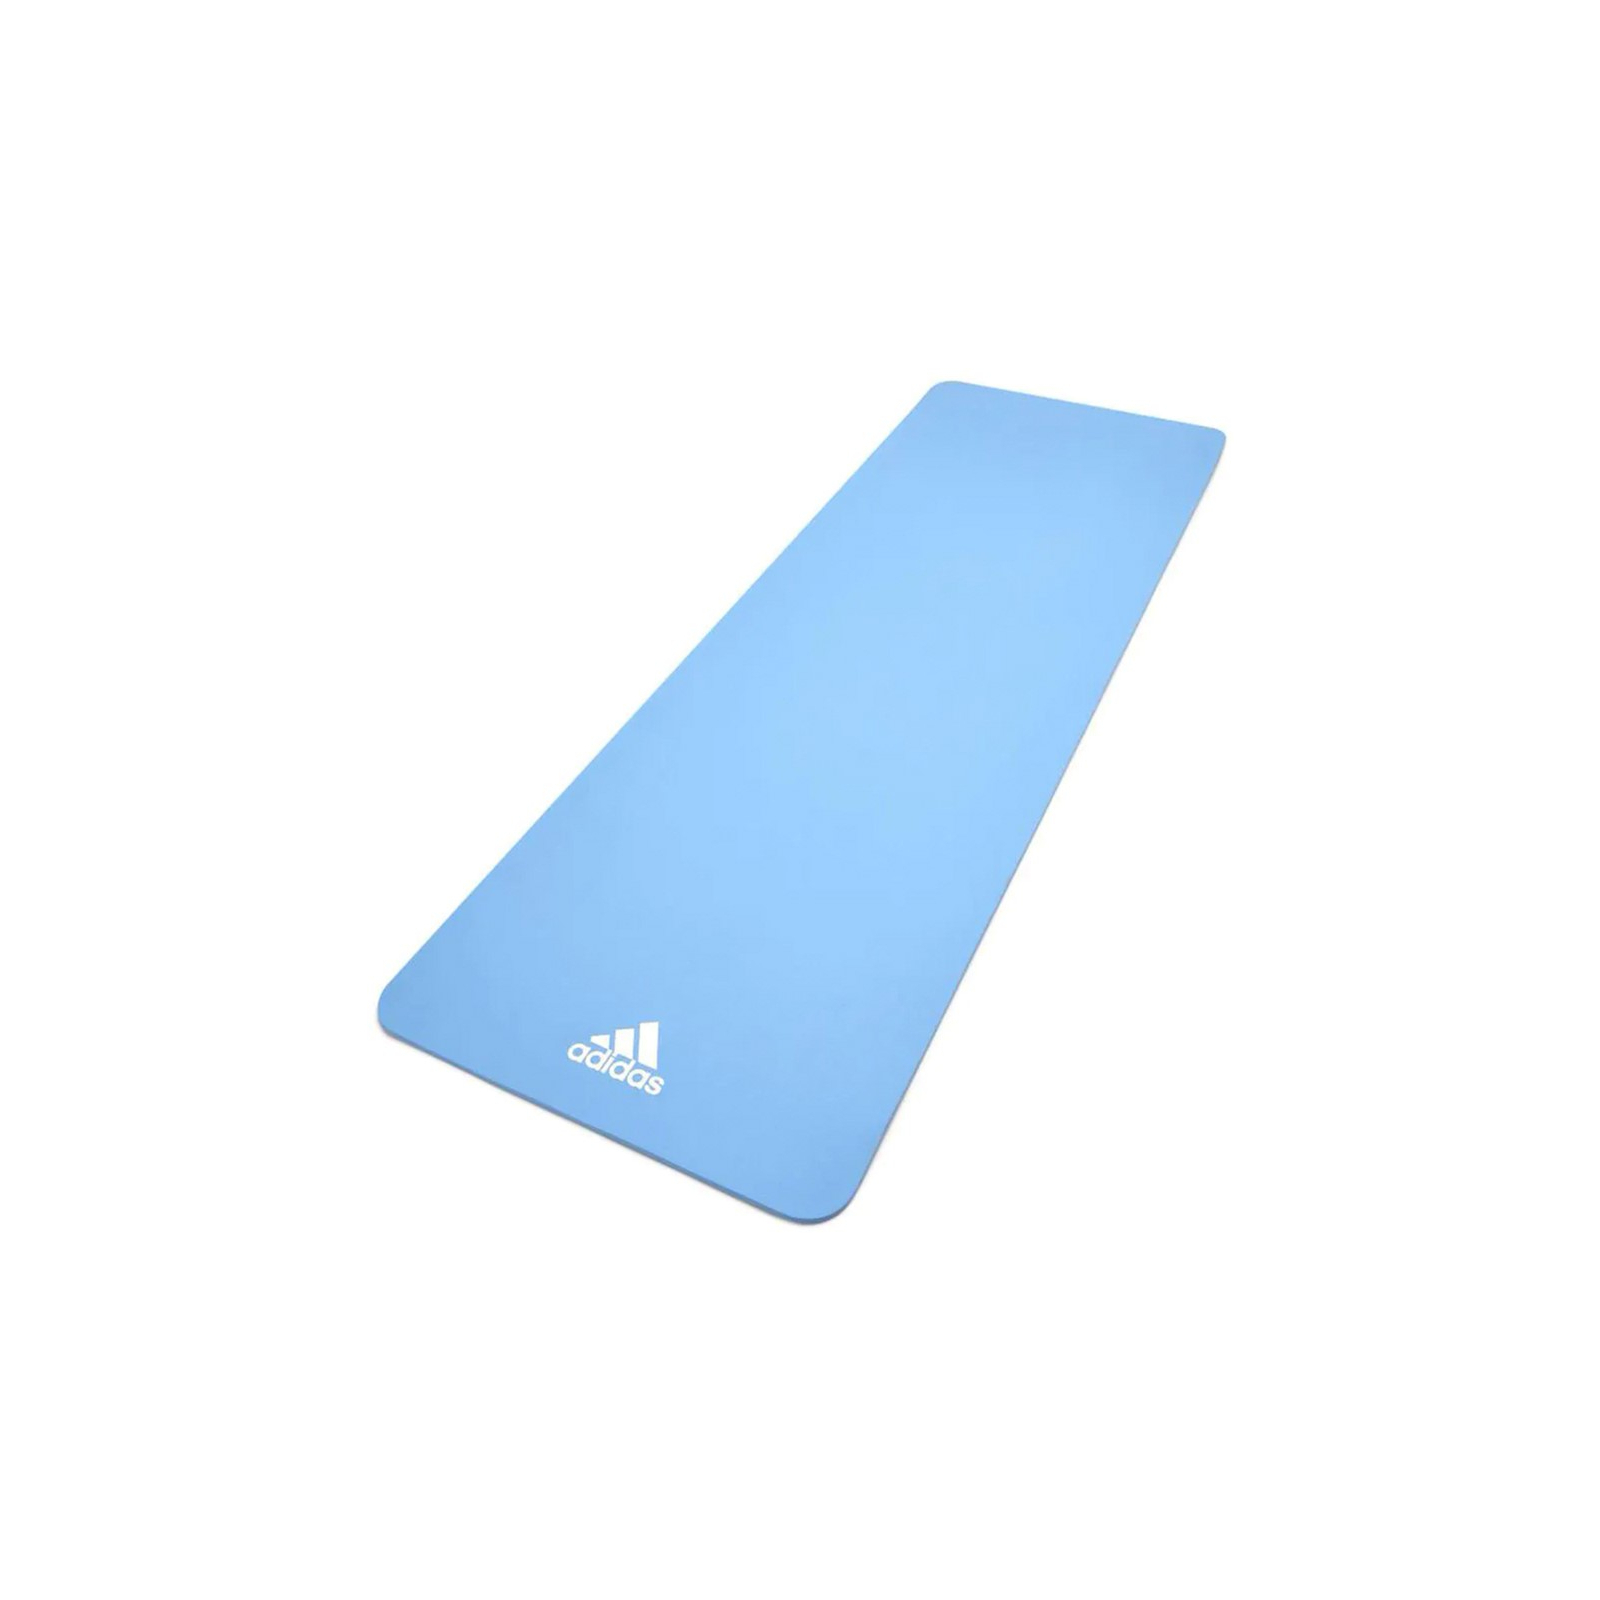 Коврик для йоги Adidas Yoga Mat Уні 176 х 61 х 0,8 см Блакитний (ADYG-10100GB)